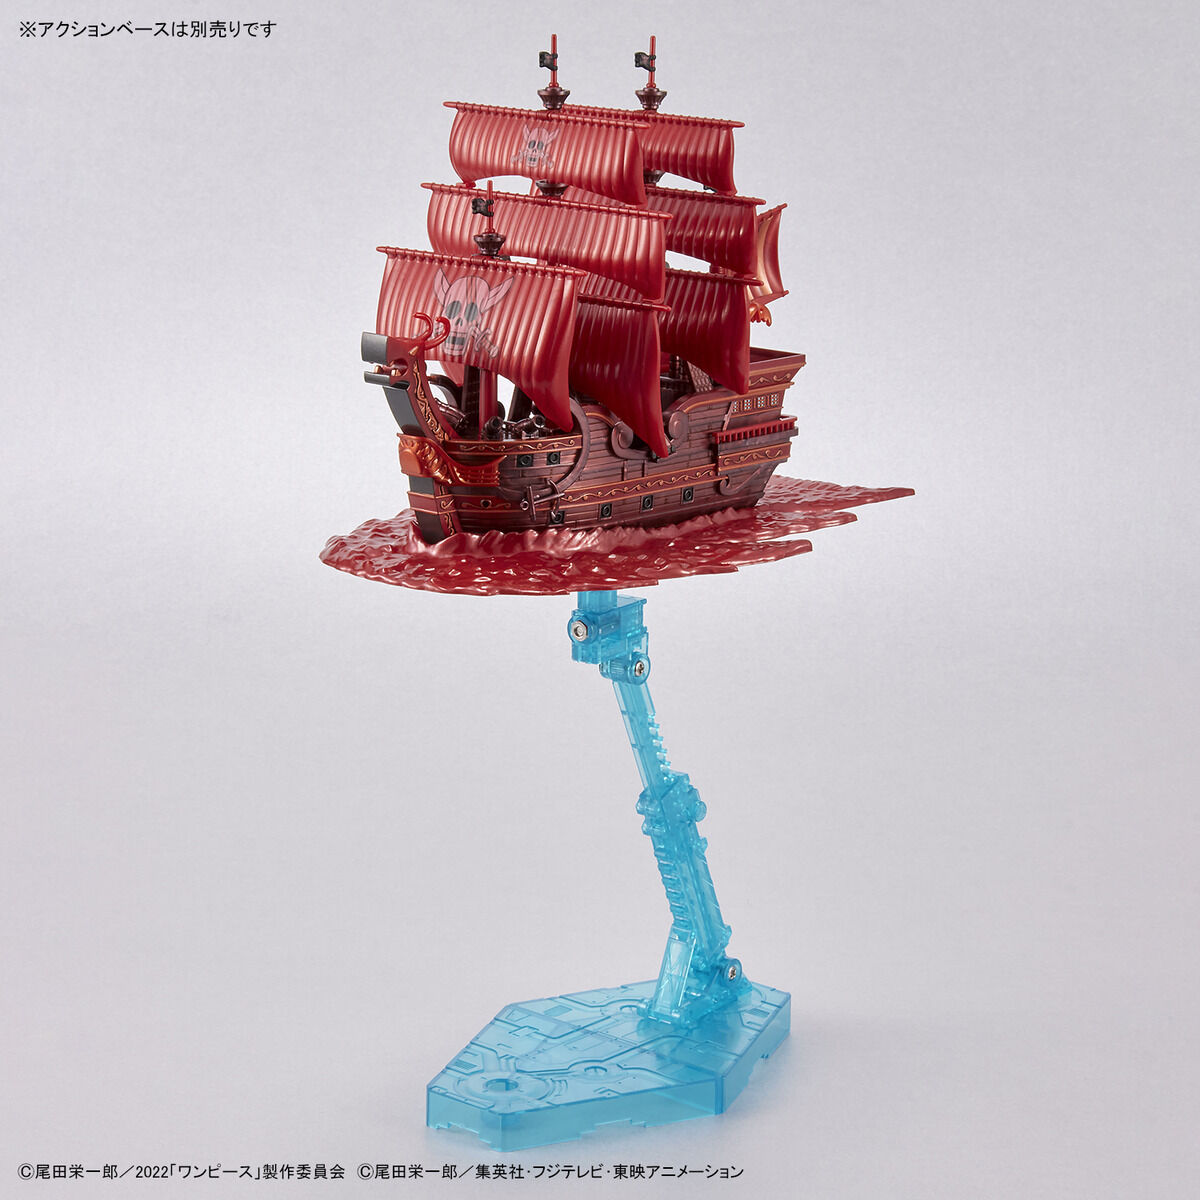 ワンピース偉大なる船コレクション レッド・フォース号「FILM RED」公開記念カラーVer. 10